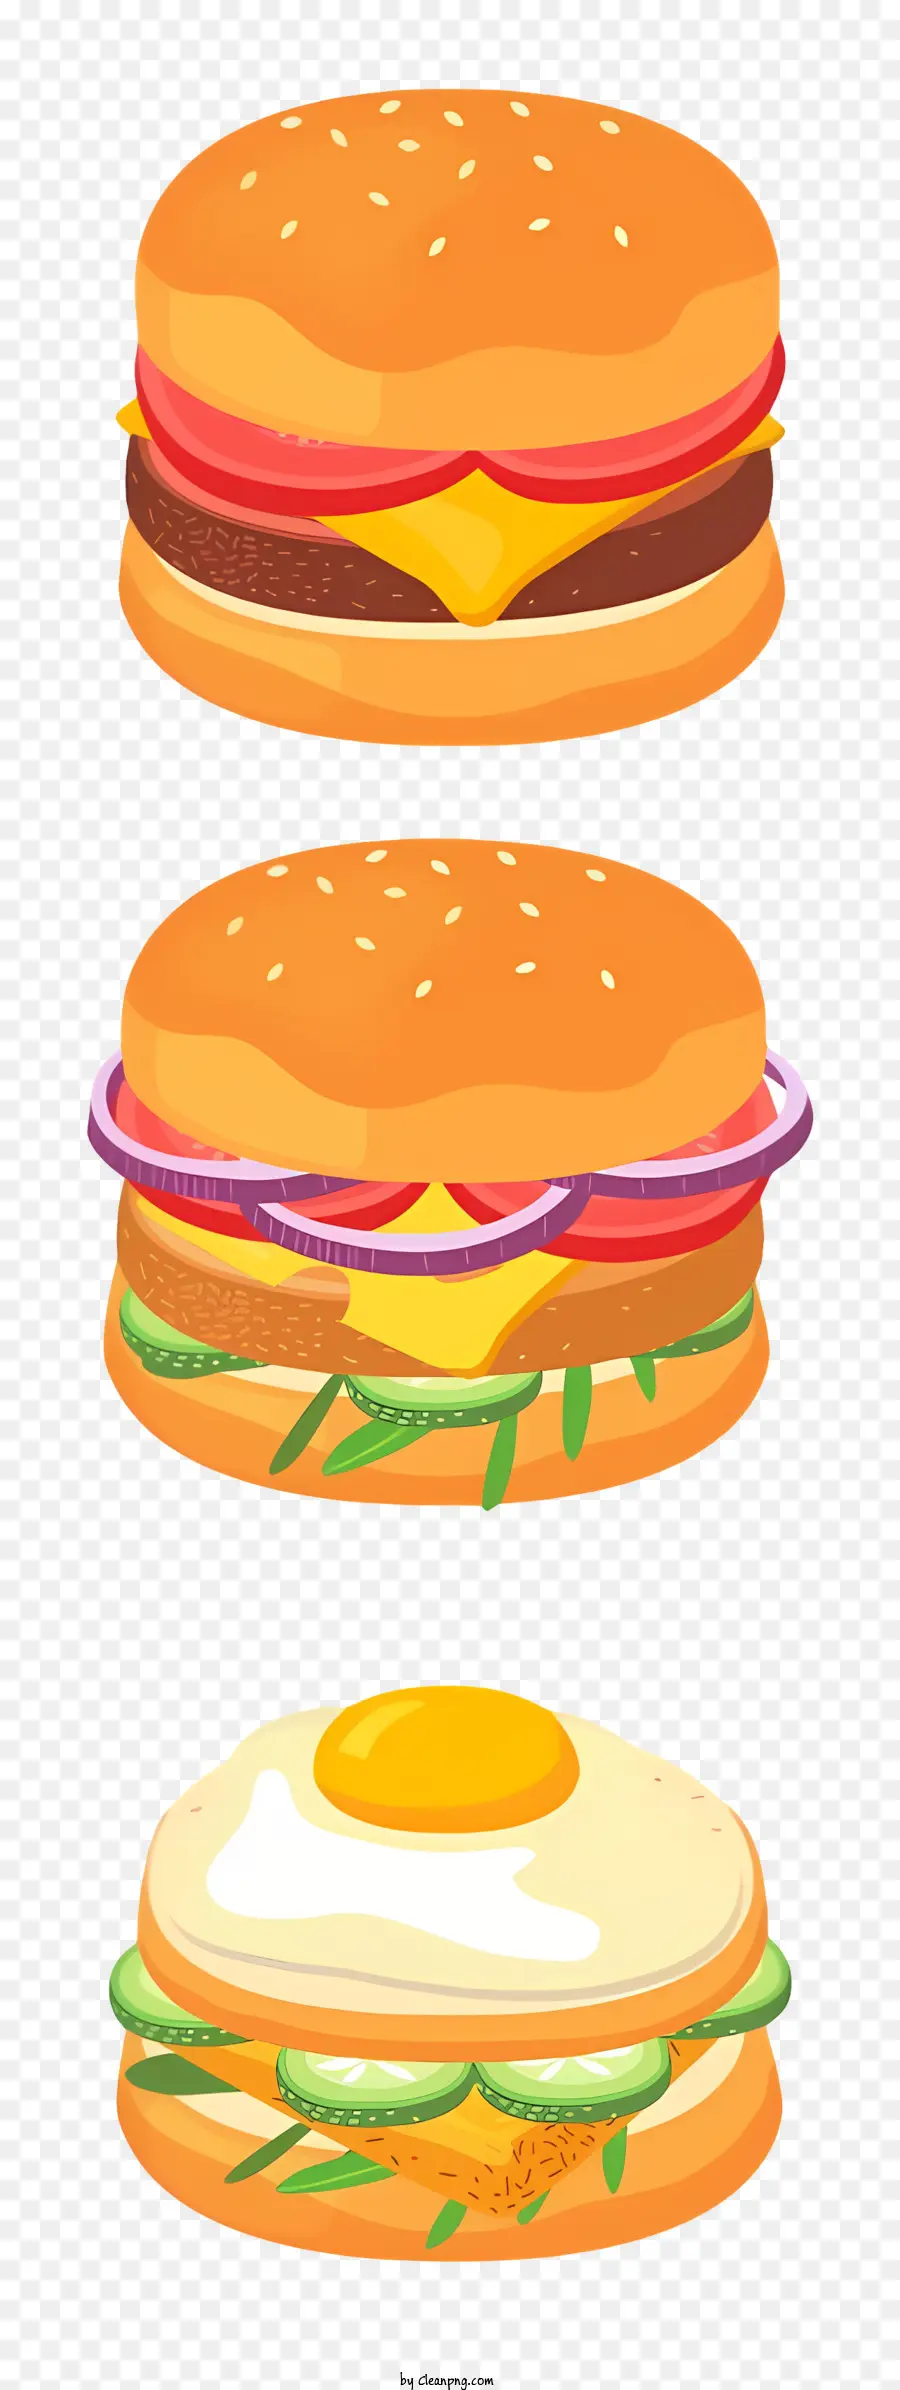 Tomaten - 3D -Illustration von drei Hamburger auf einem Teller